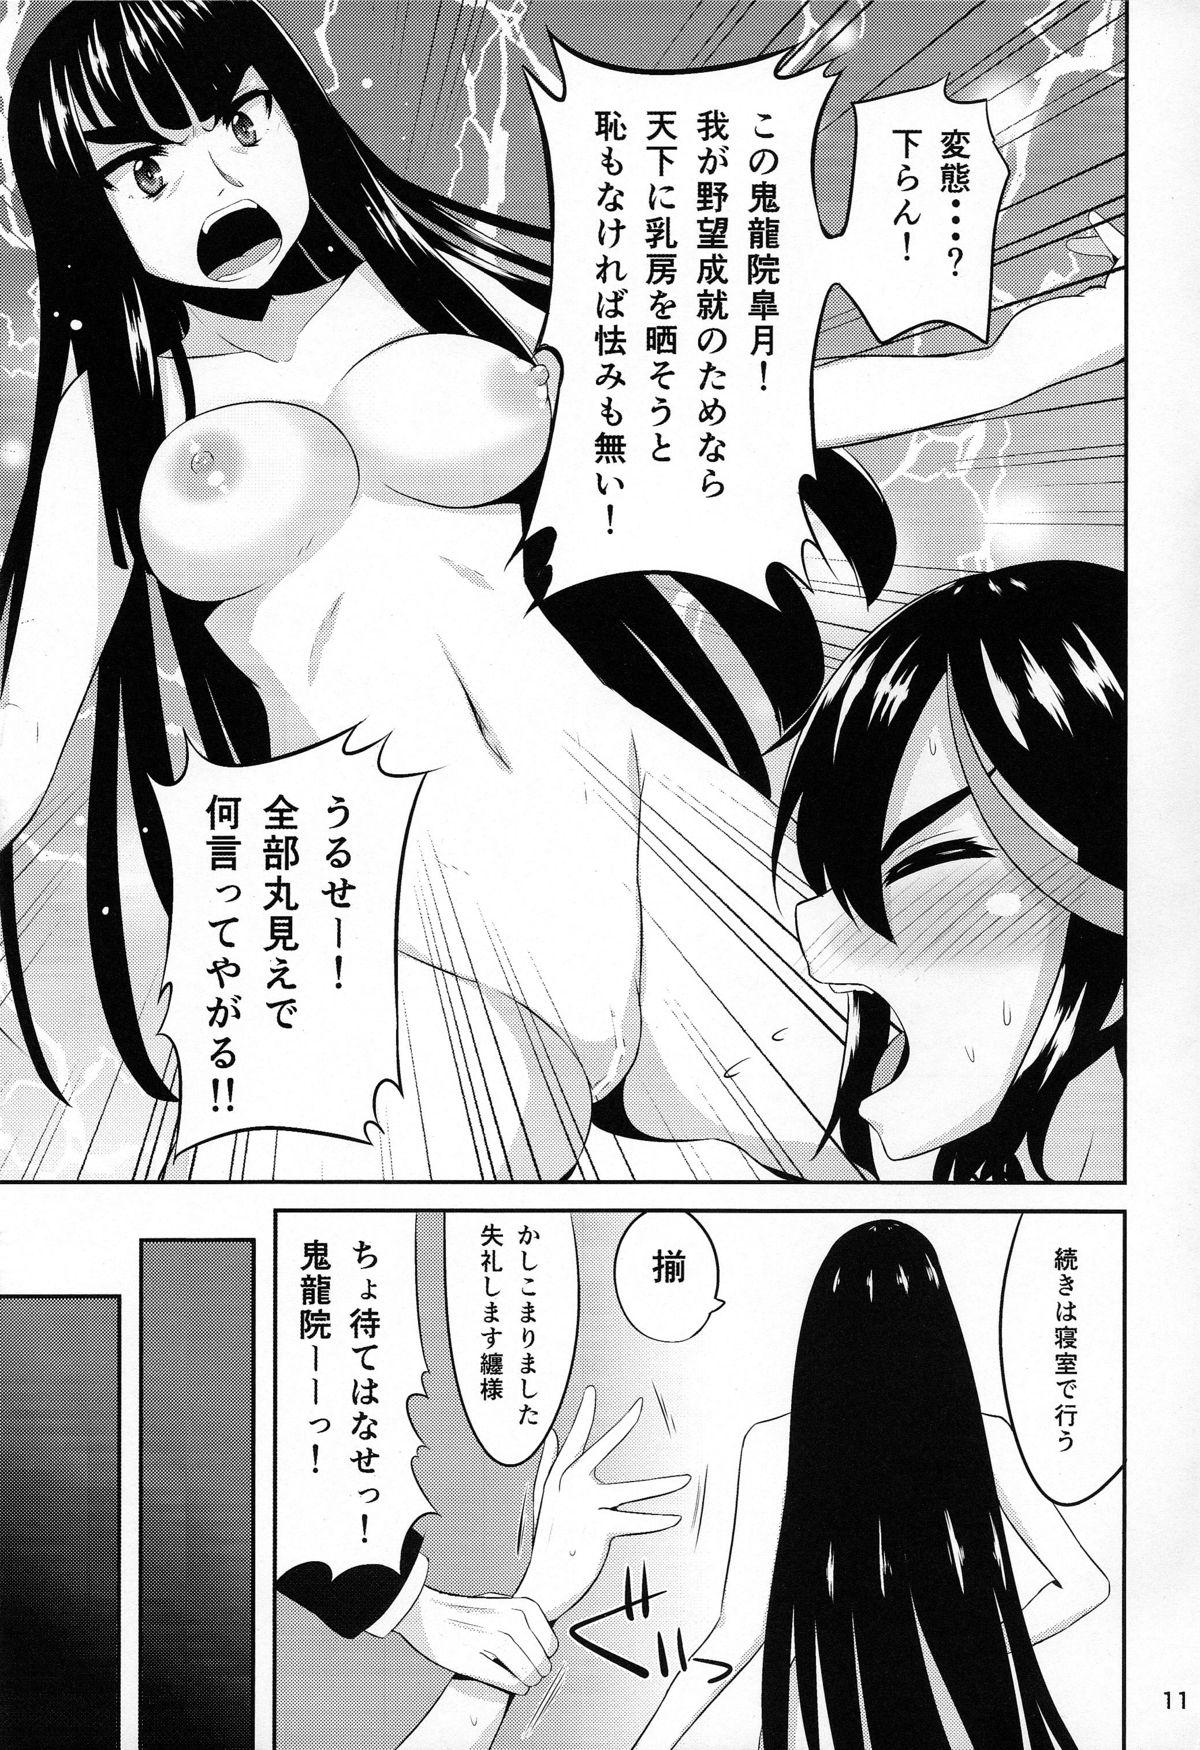 Tits Satsuki-Ryu - Kill la kill Freeporn - Page 11